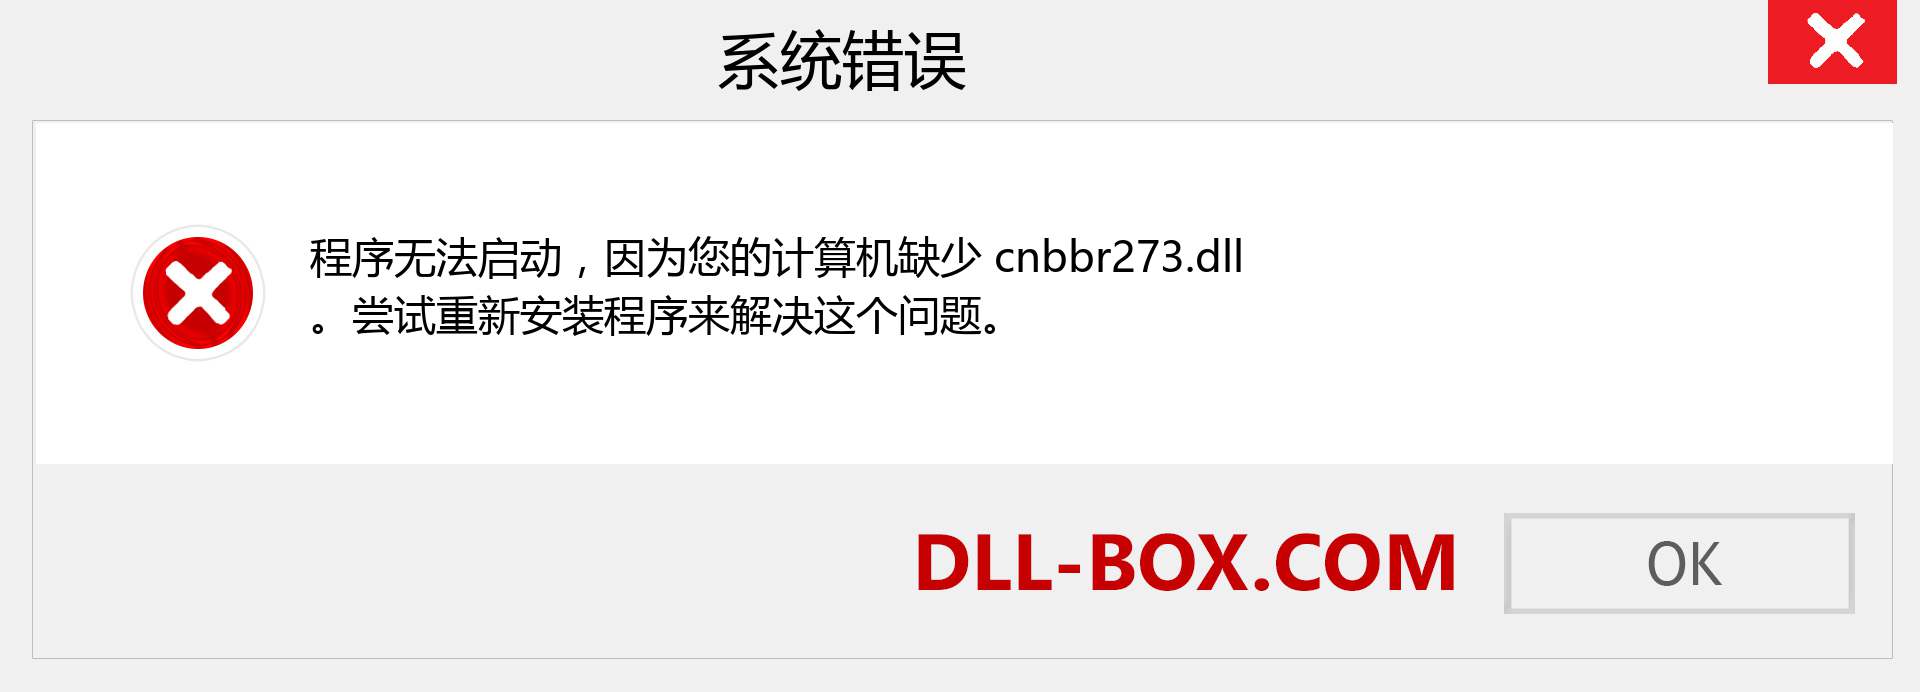 cnbbr273.dll 文件丢失？。 适用于 Windows 7、8、10 的下载 - 修复 Windows、照片、图像上的 cnbbr273 dll 丢失错误